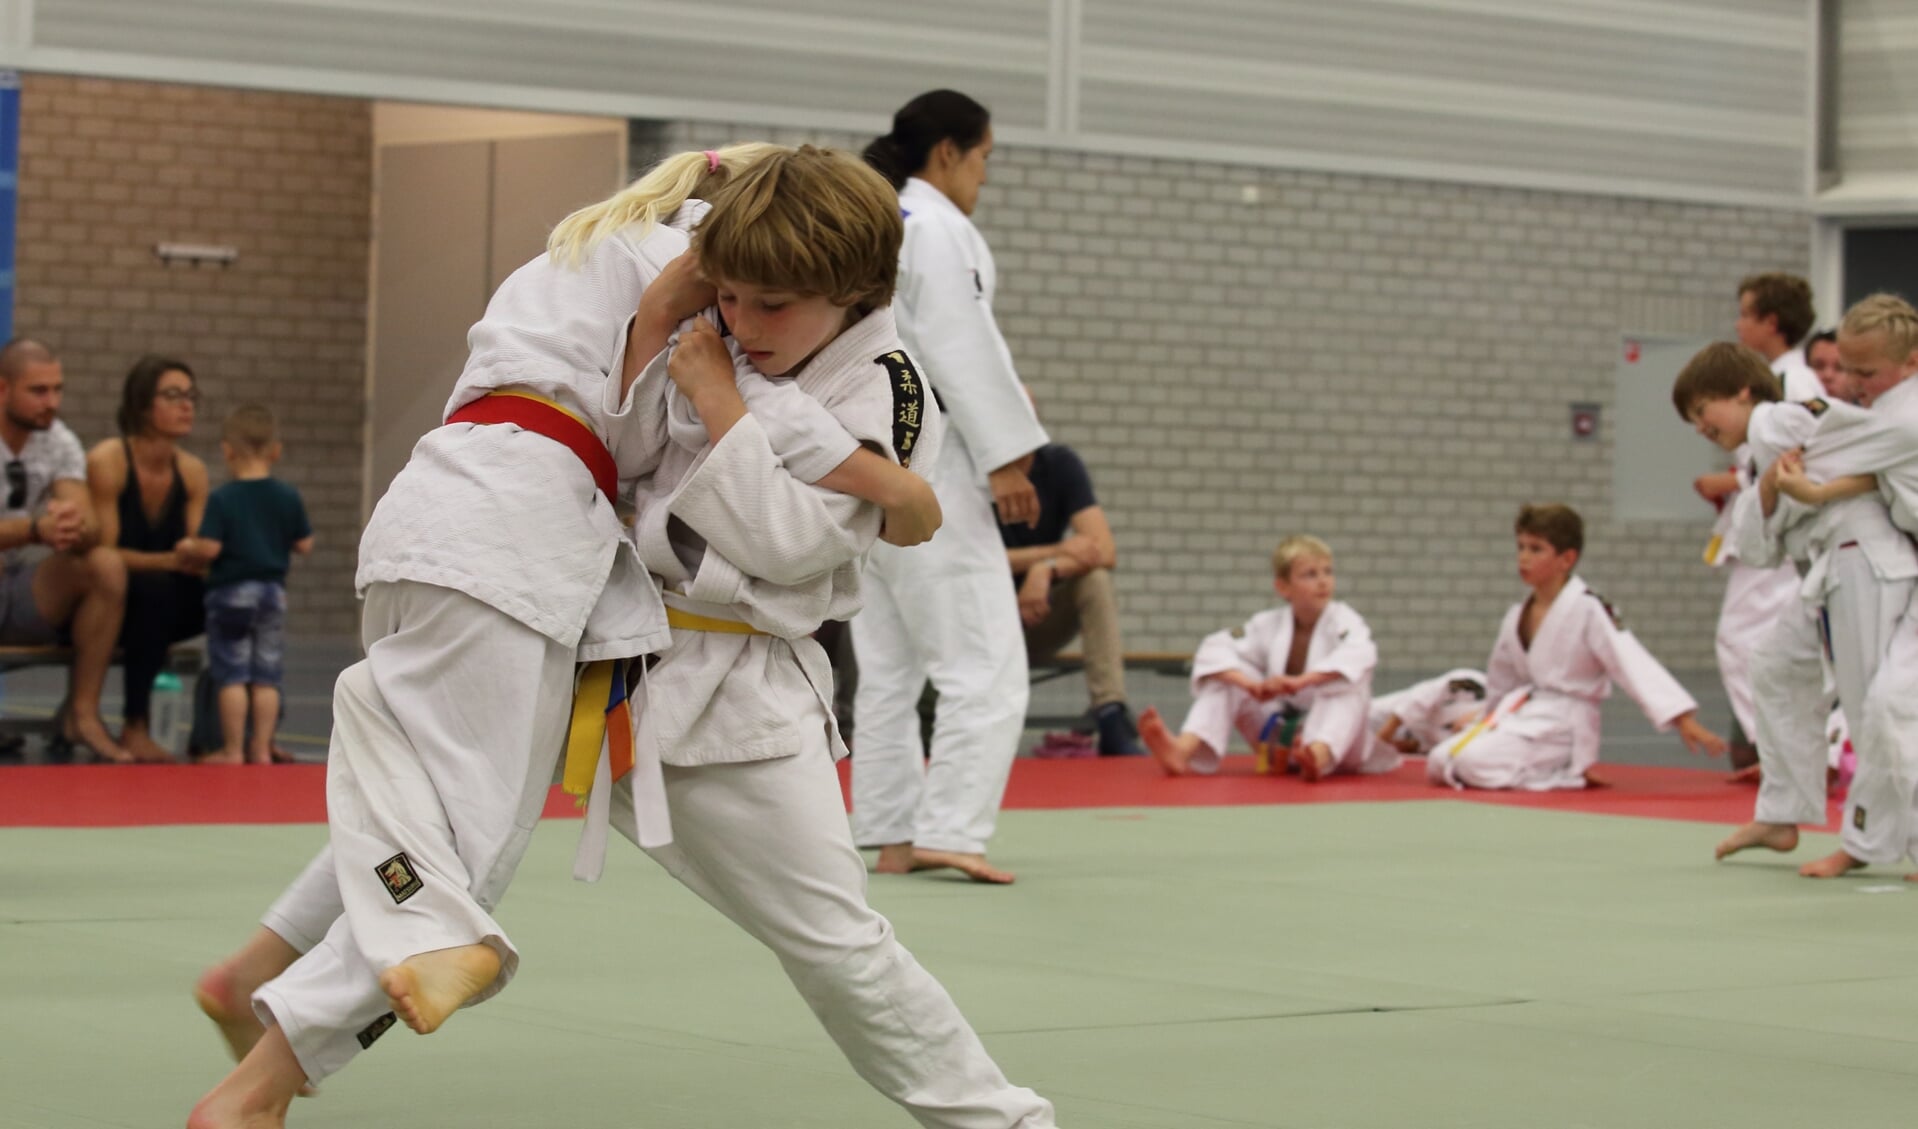 Op acht judomatten werd er zeer sportief gestreden voor de medailles. | Foto Karel David van der Gun